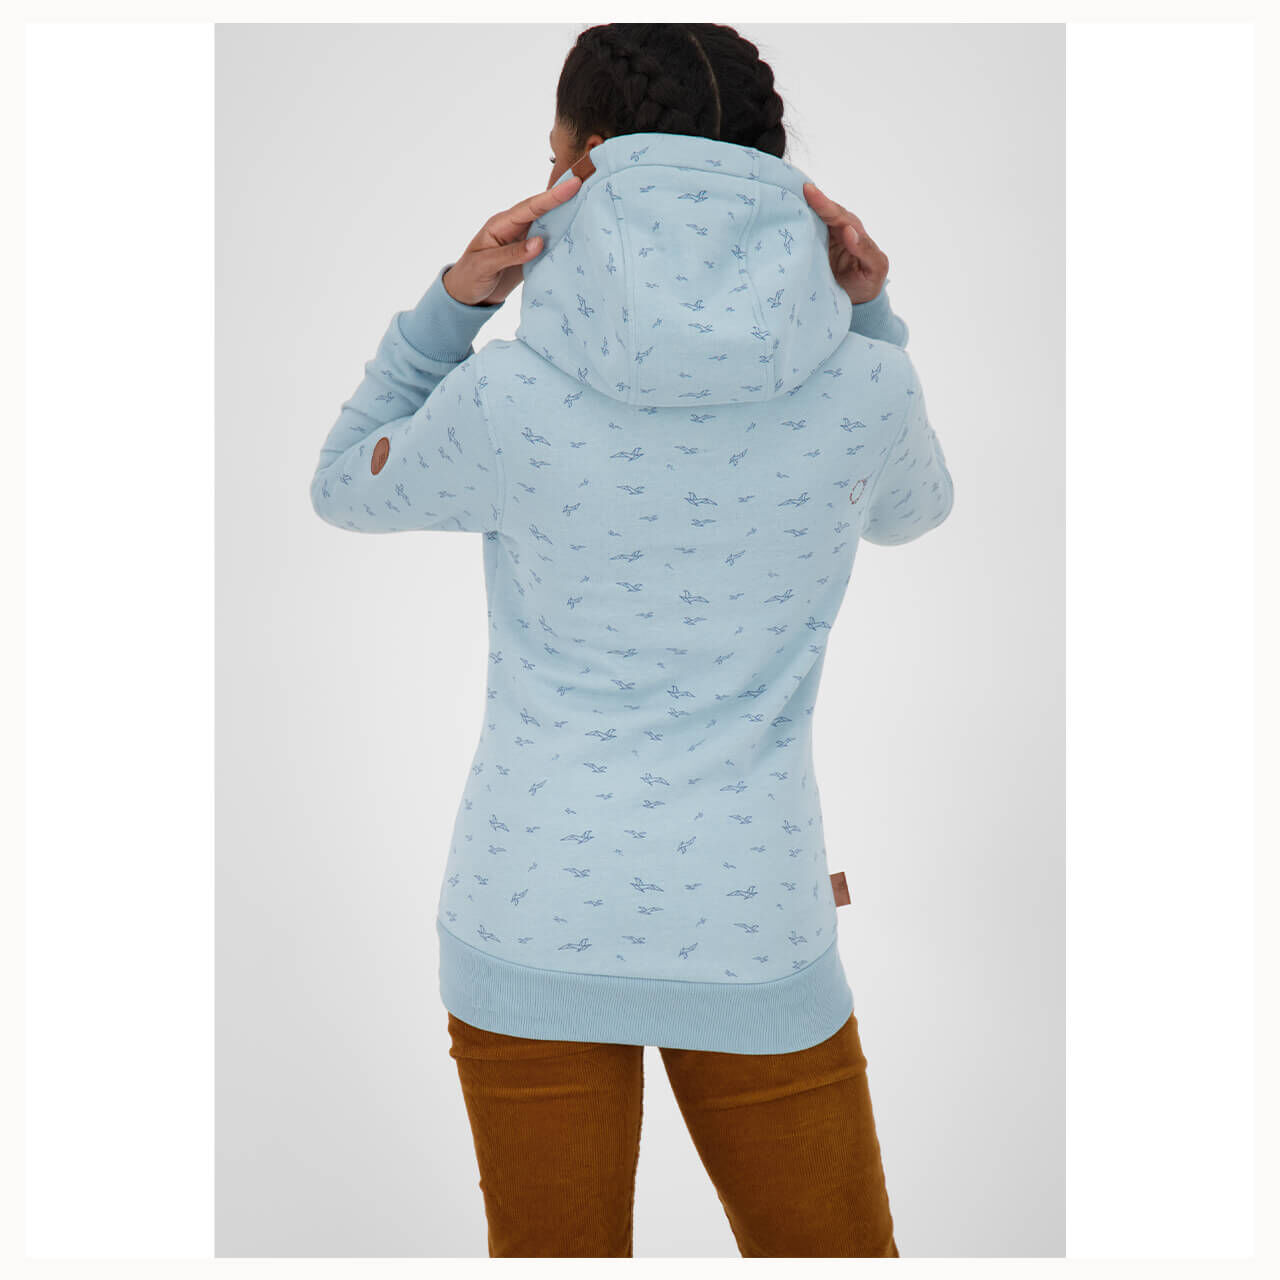 Alife and Kickin Sarina A Hoodie Sweatshirt für Damen in Eisblau mit Print, FarbNr.: 5100